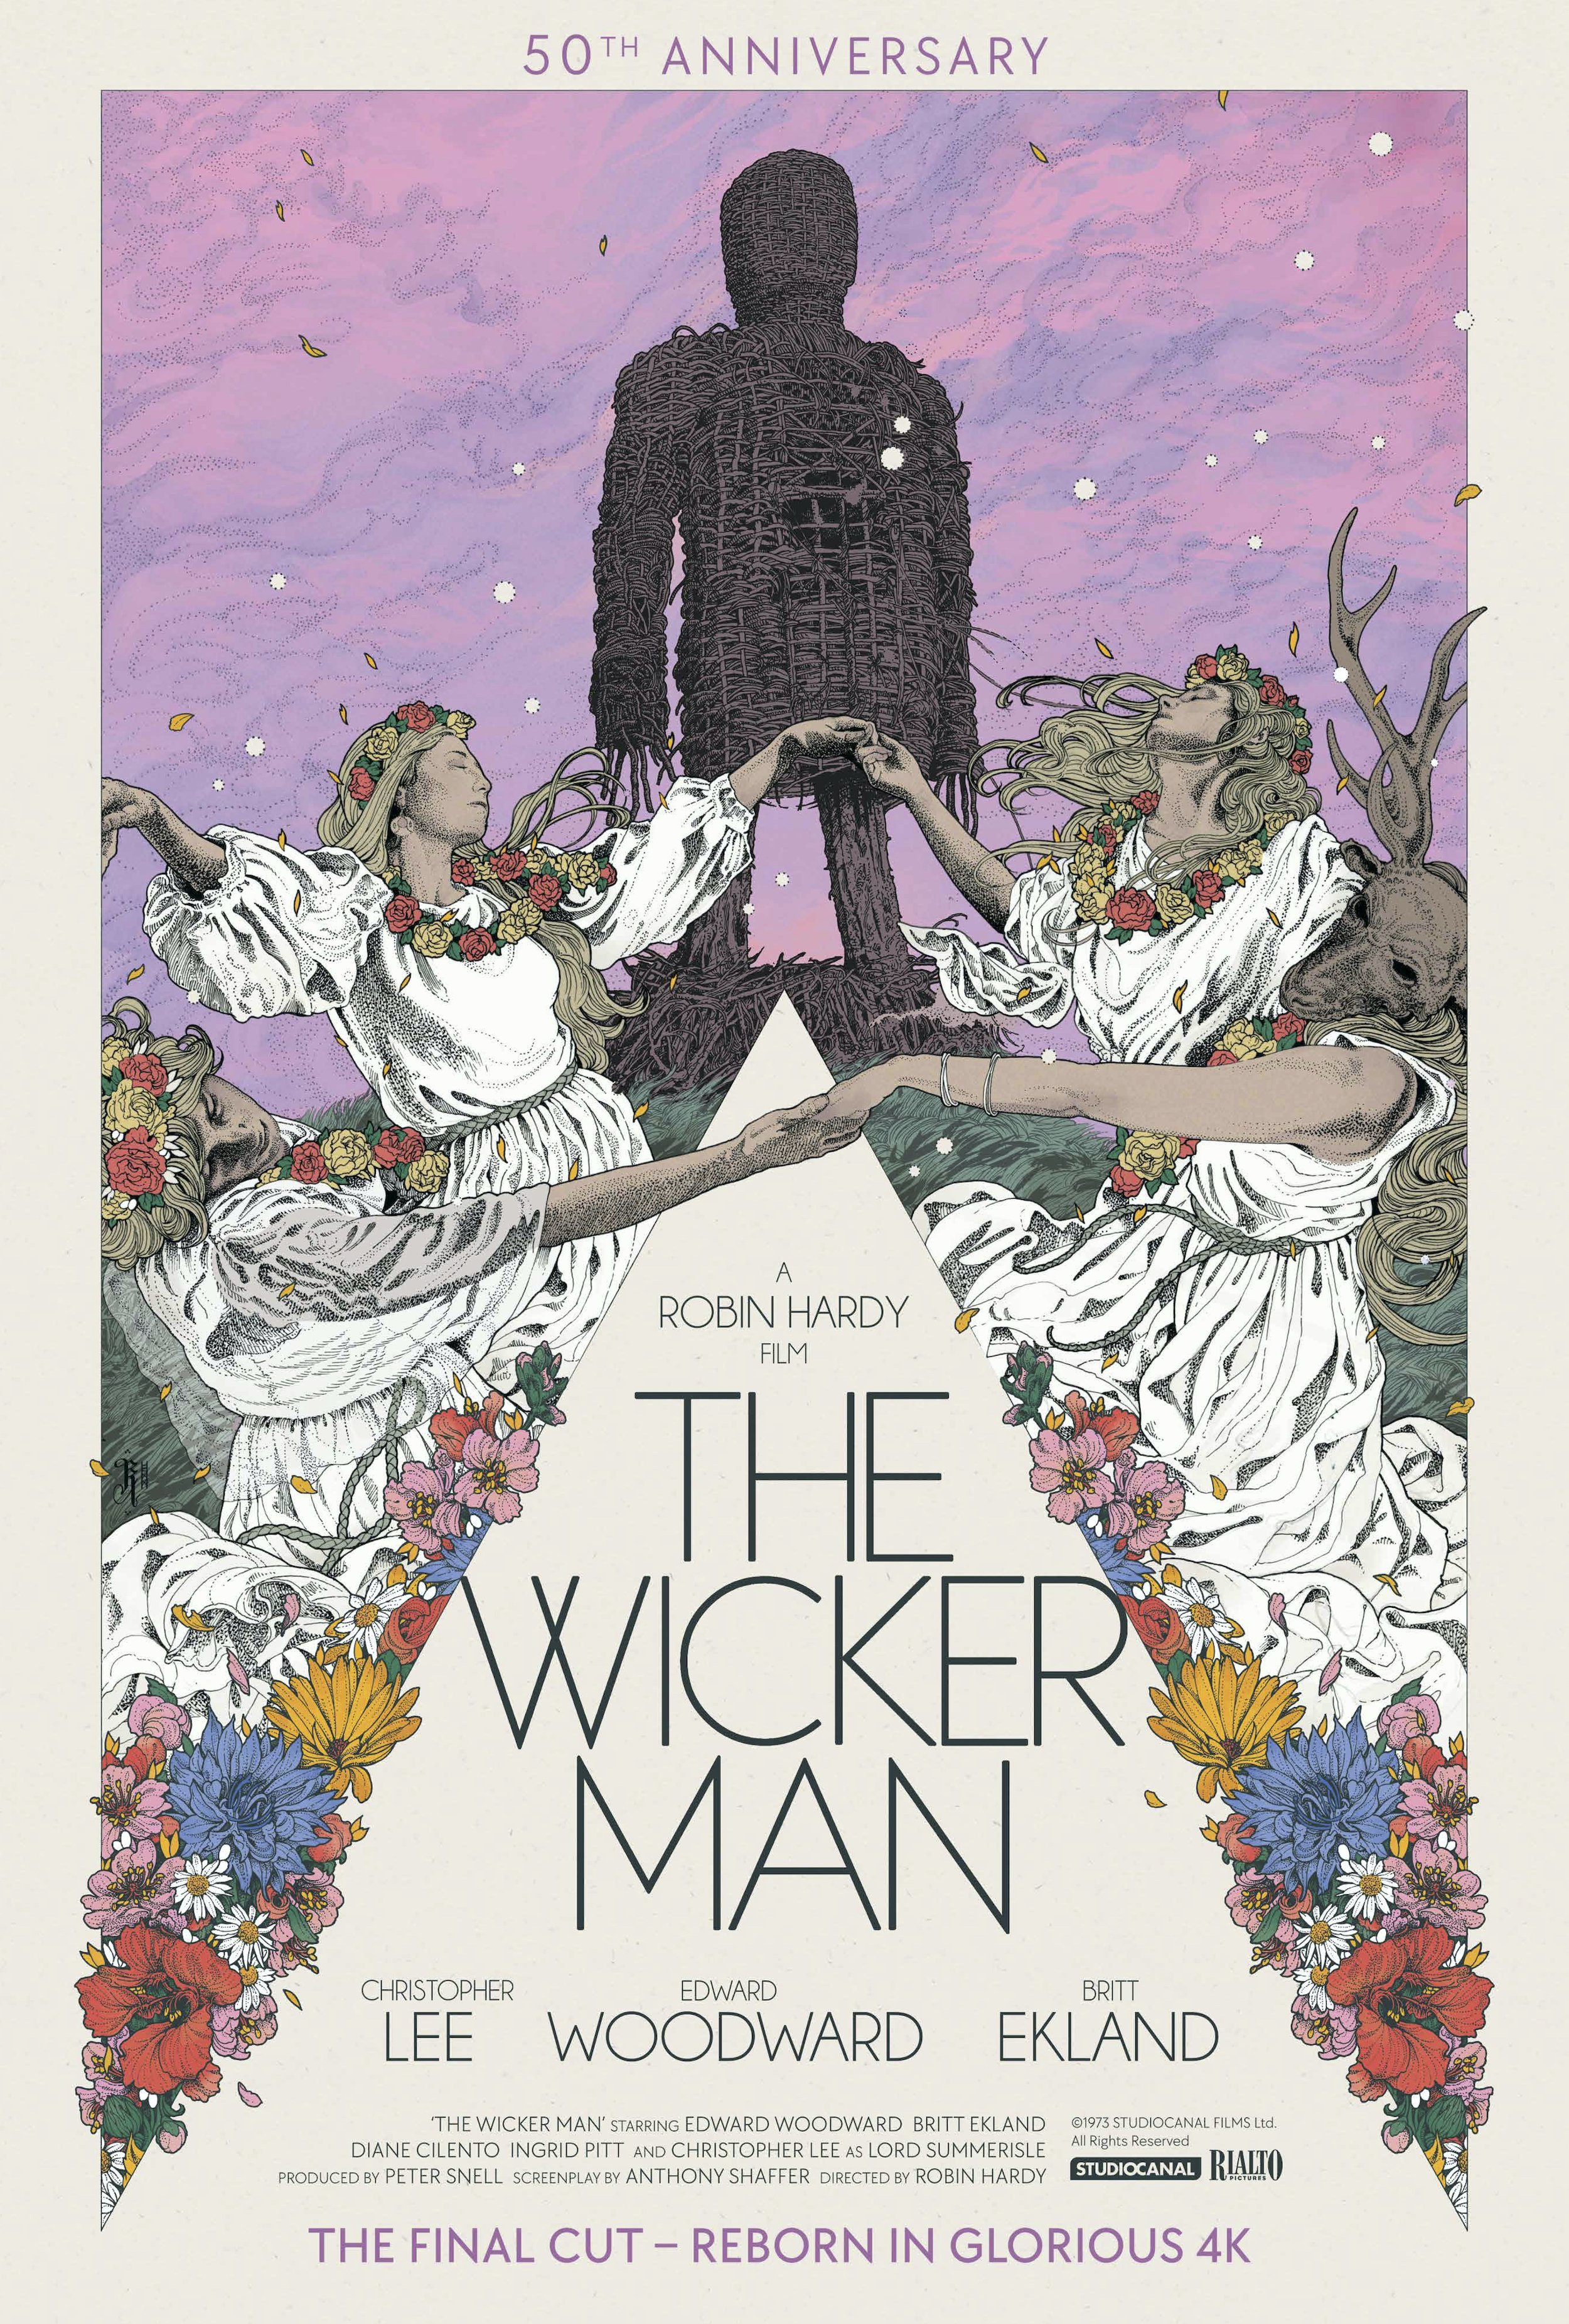 The Wicker Man (1976)